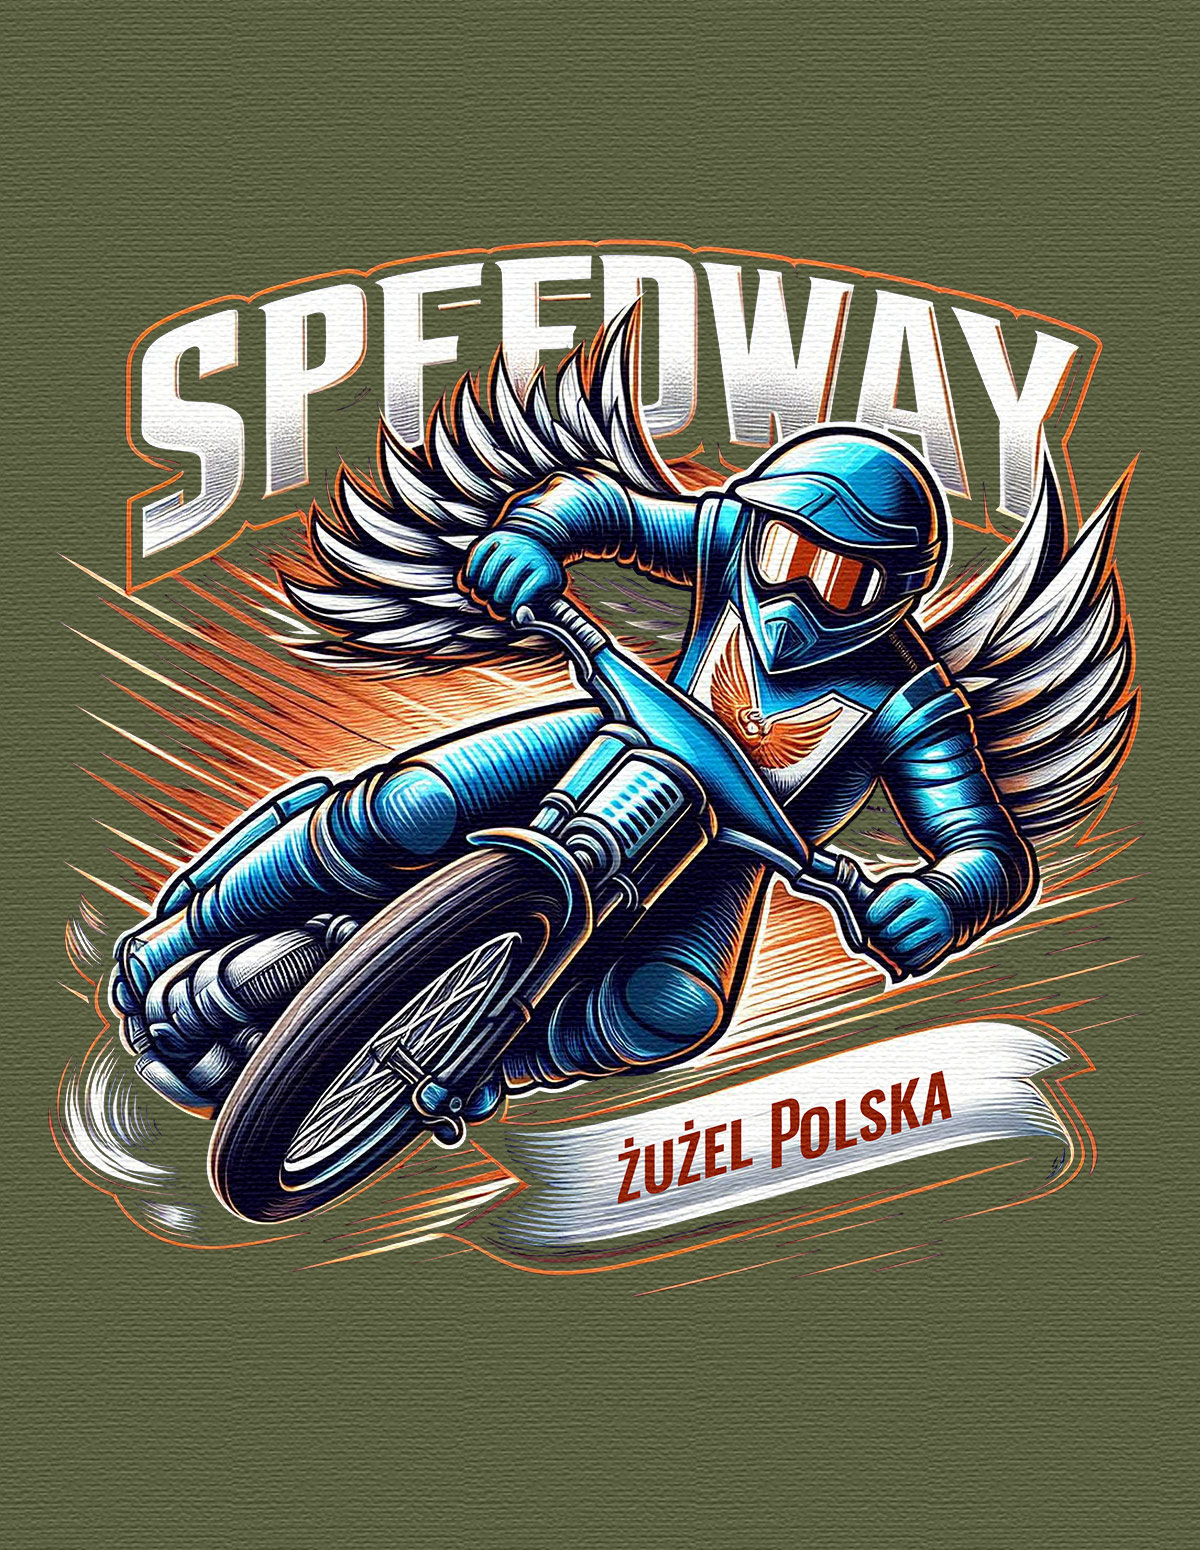 Koszulka męska - speedway żużel polska